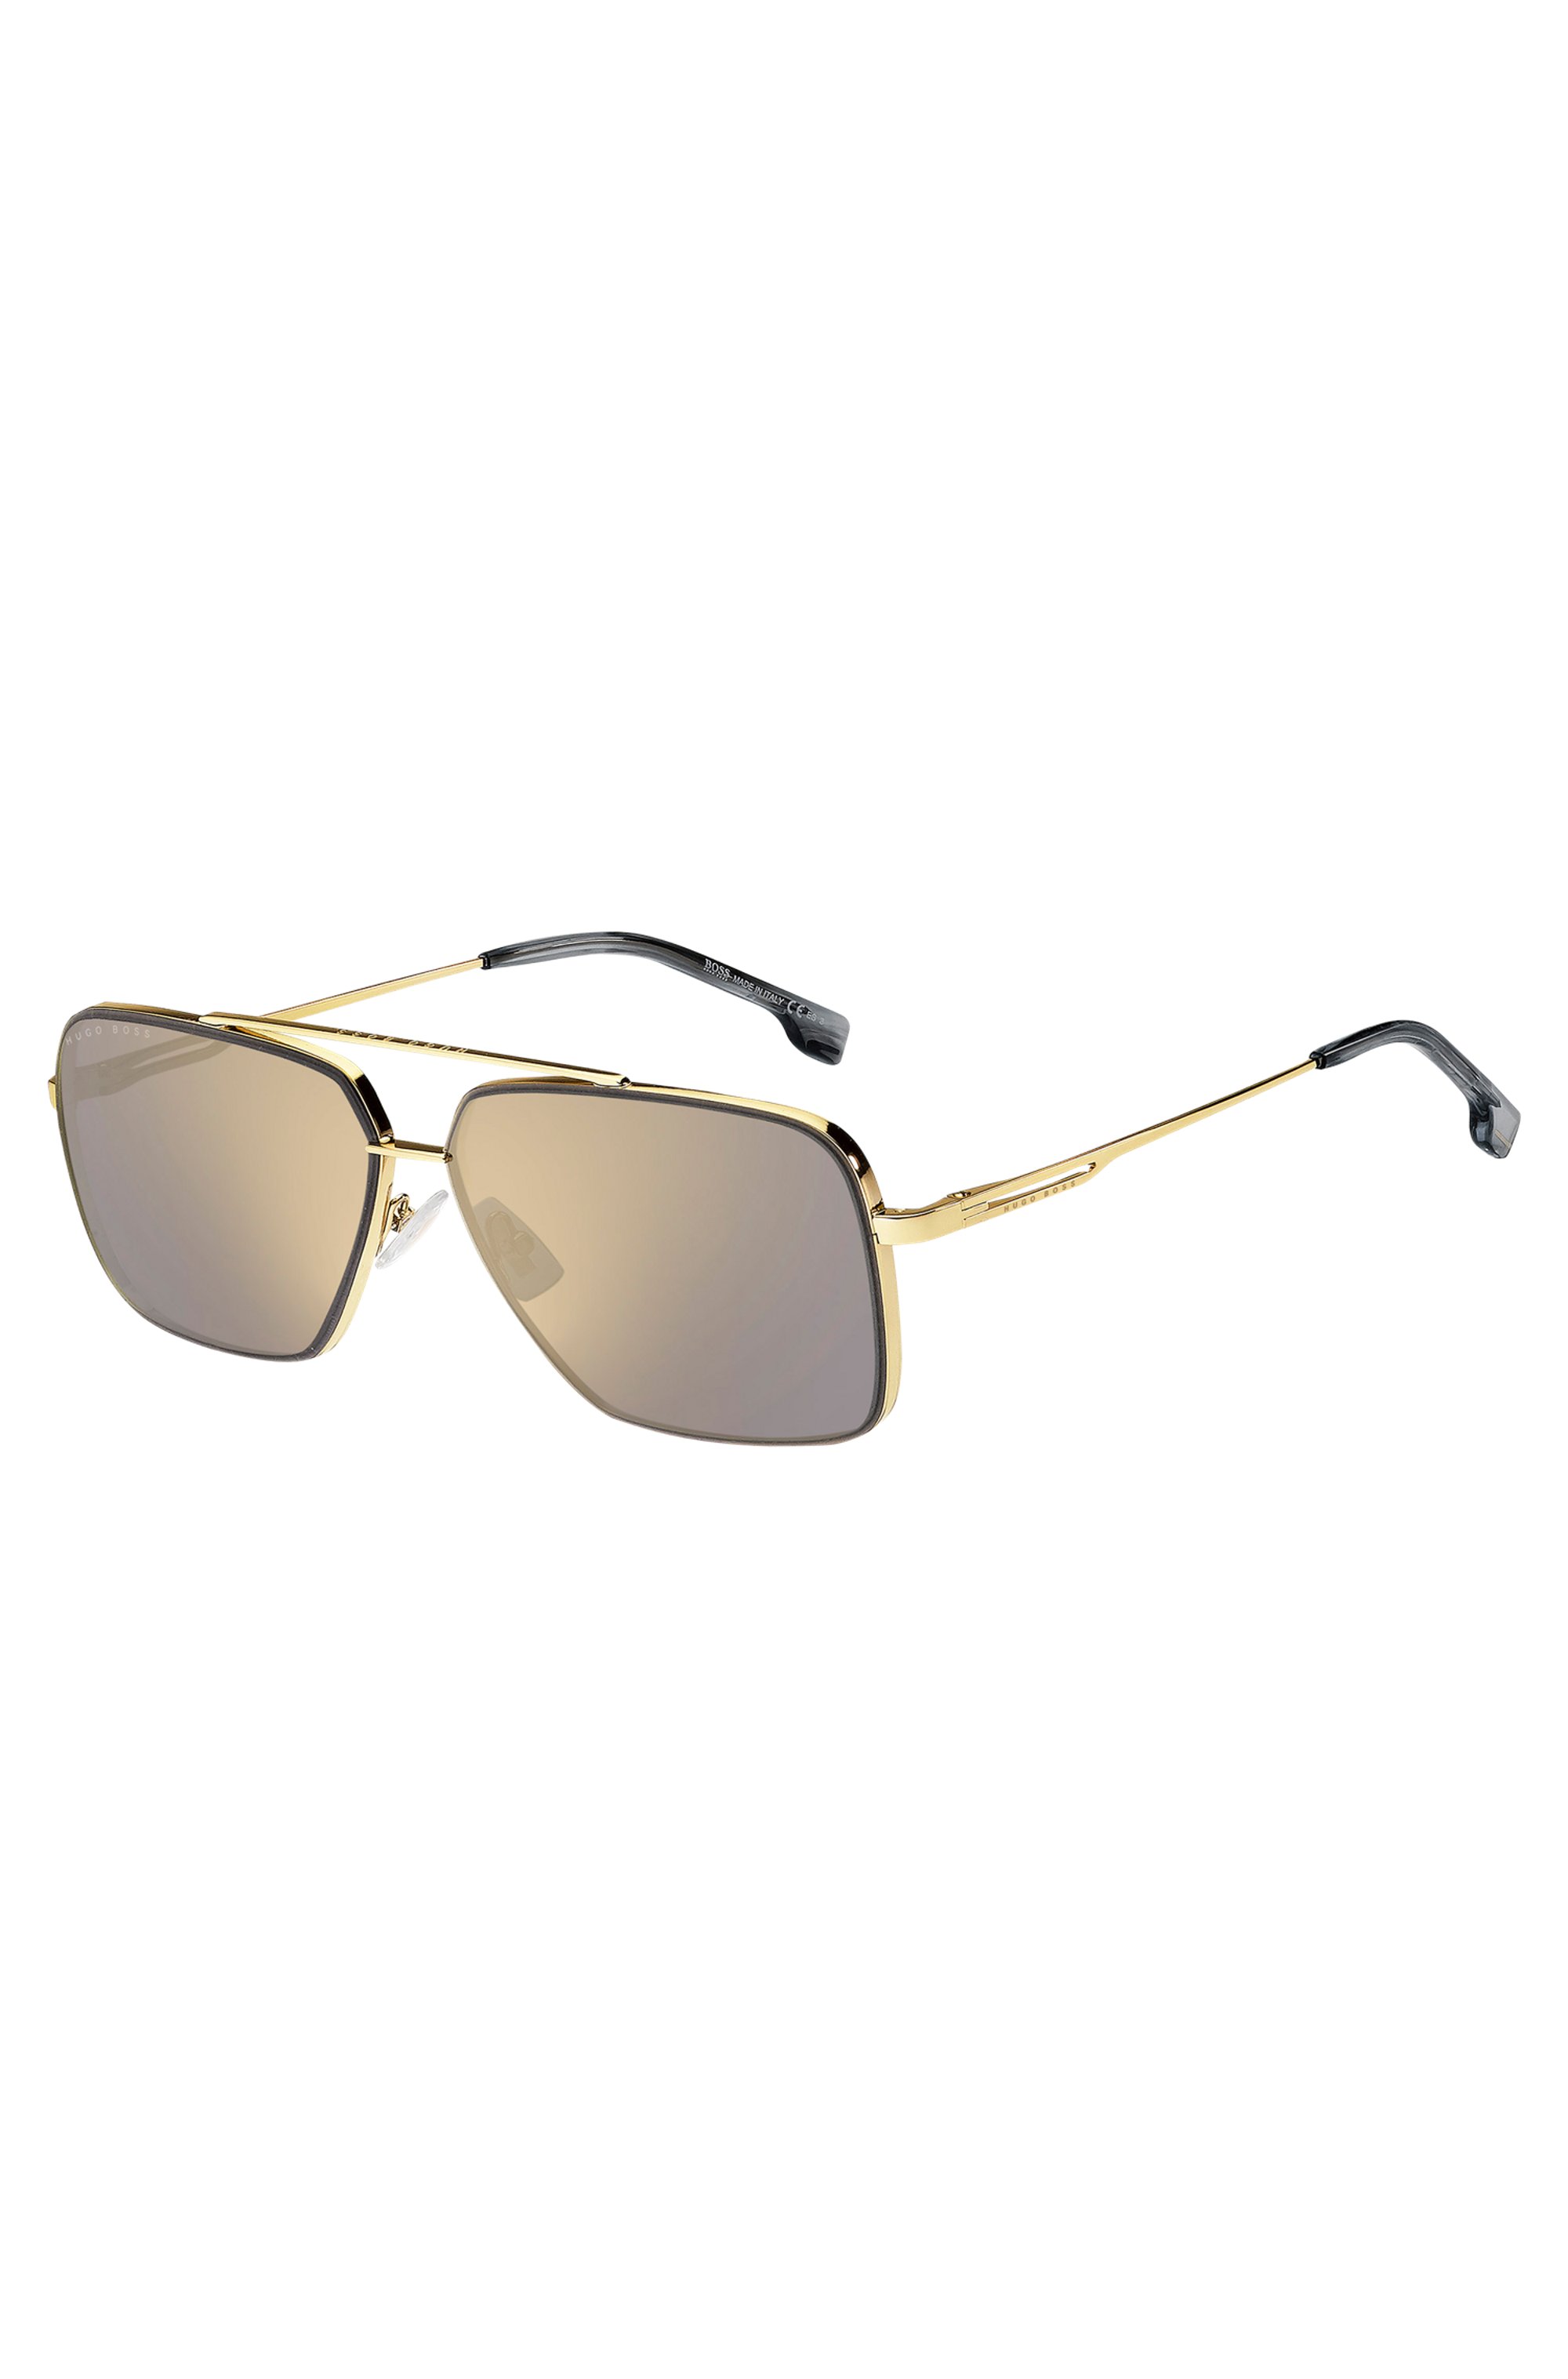 Goldfarbene Sonnenbrille aus Metall mit Aussparung an den Bügeln, Gold